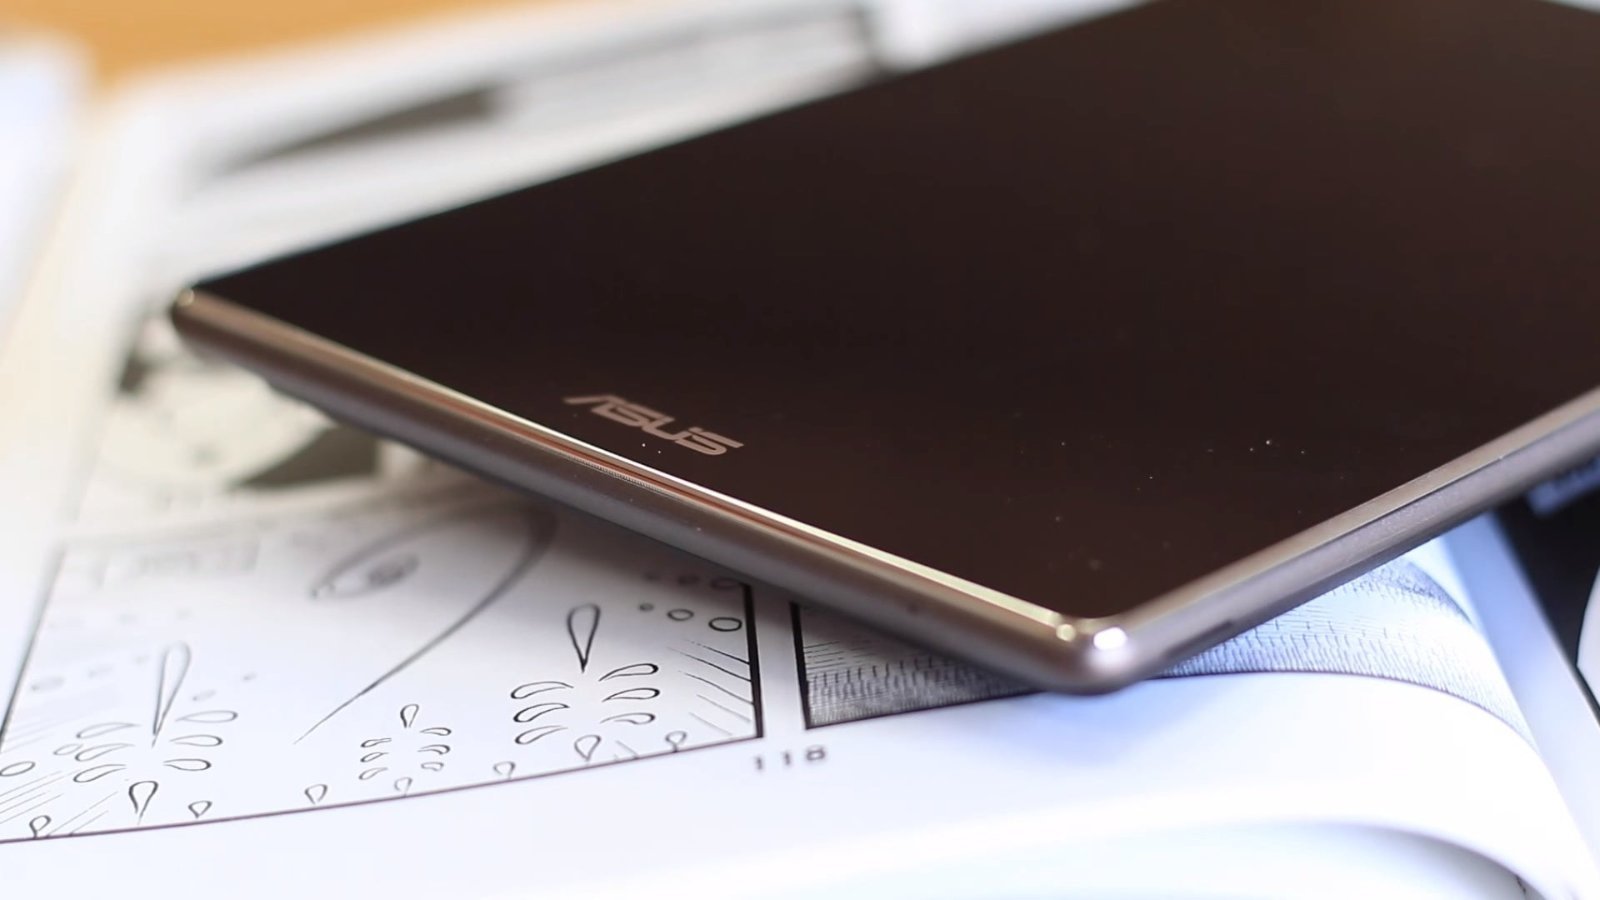 ASUS ZenPad 8, análisis de una tablet Android de calidad a precio reducido